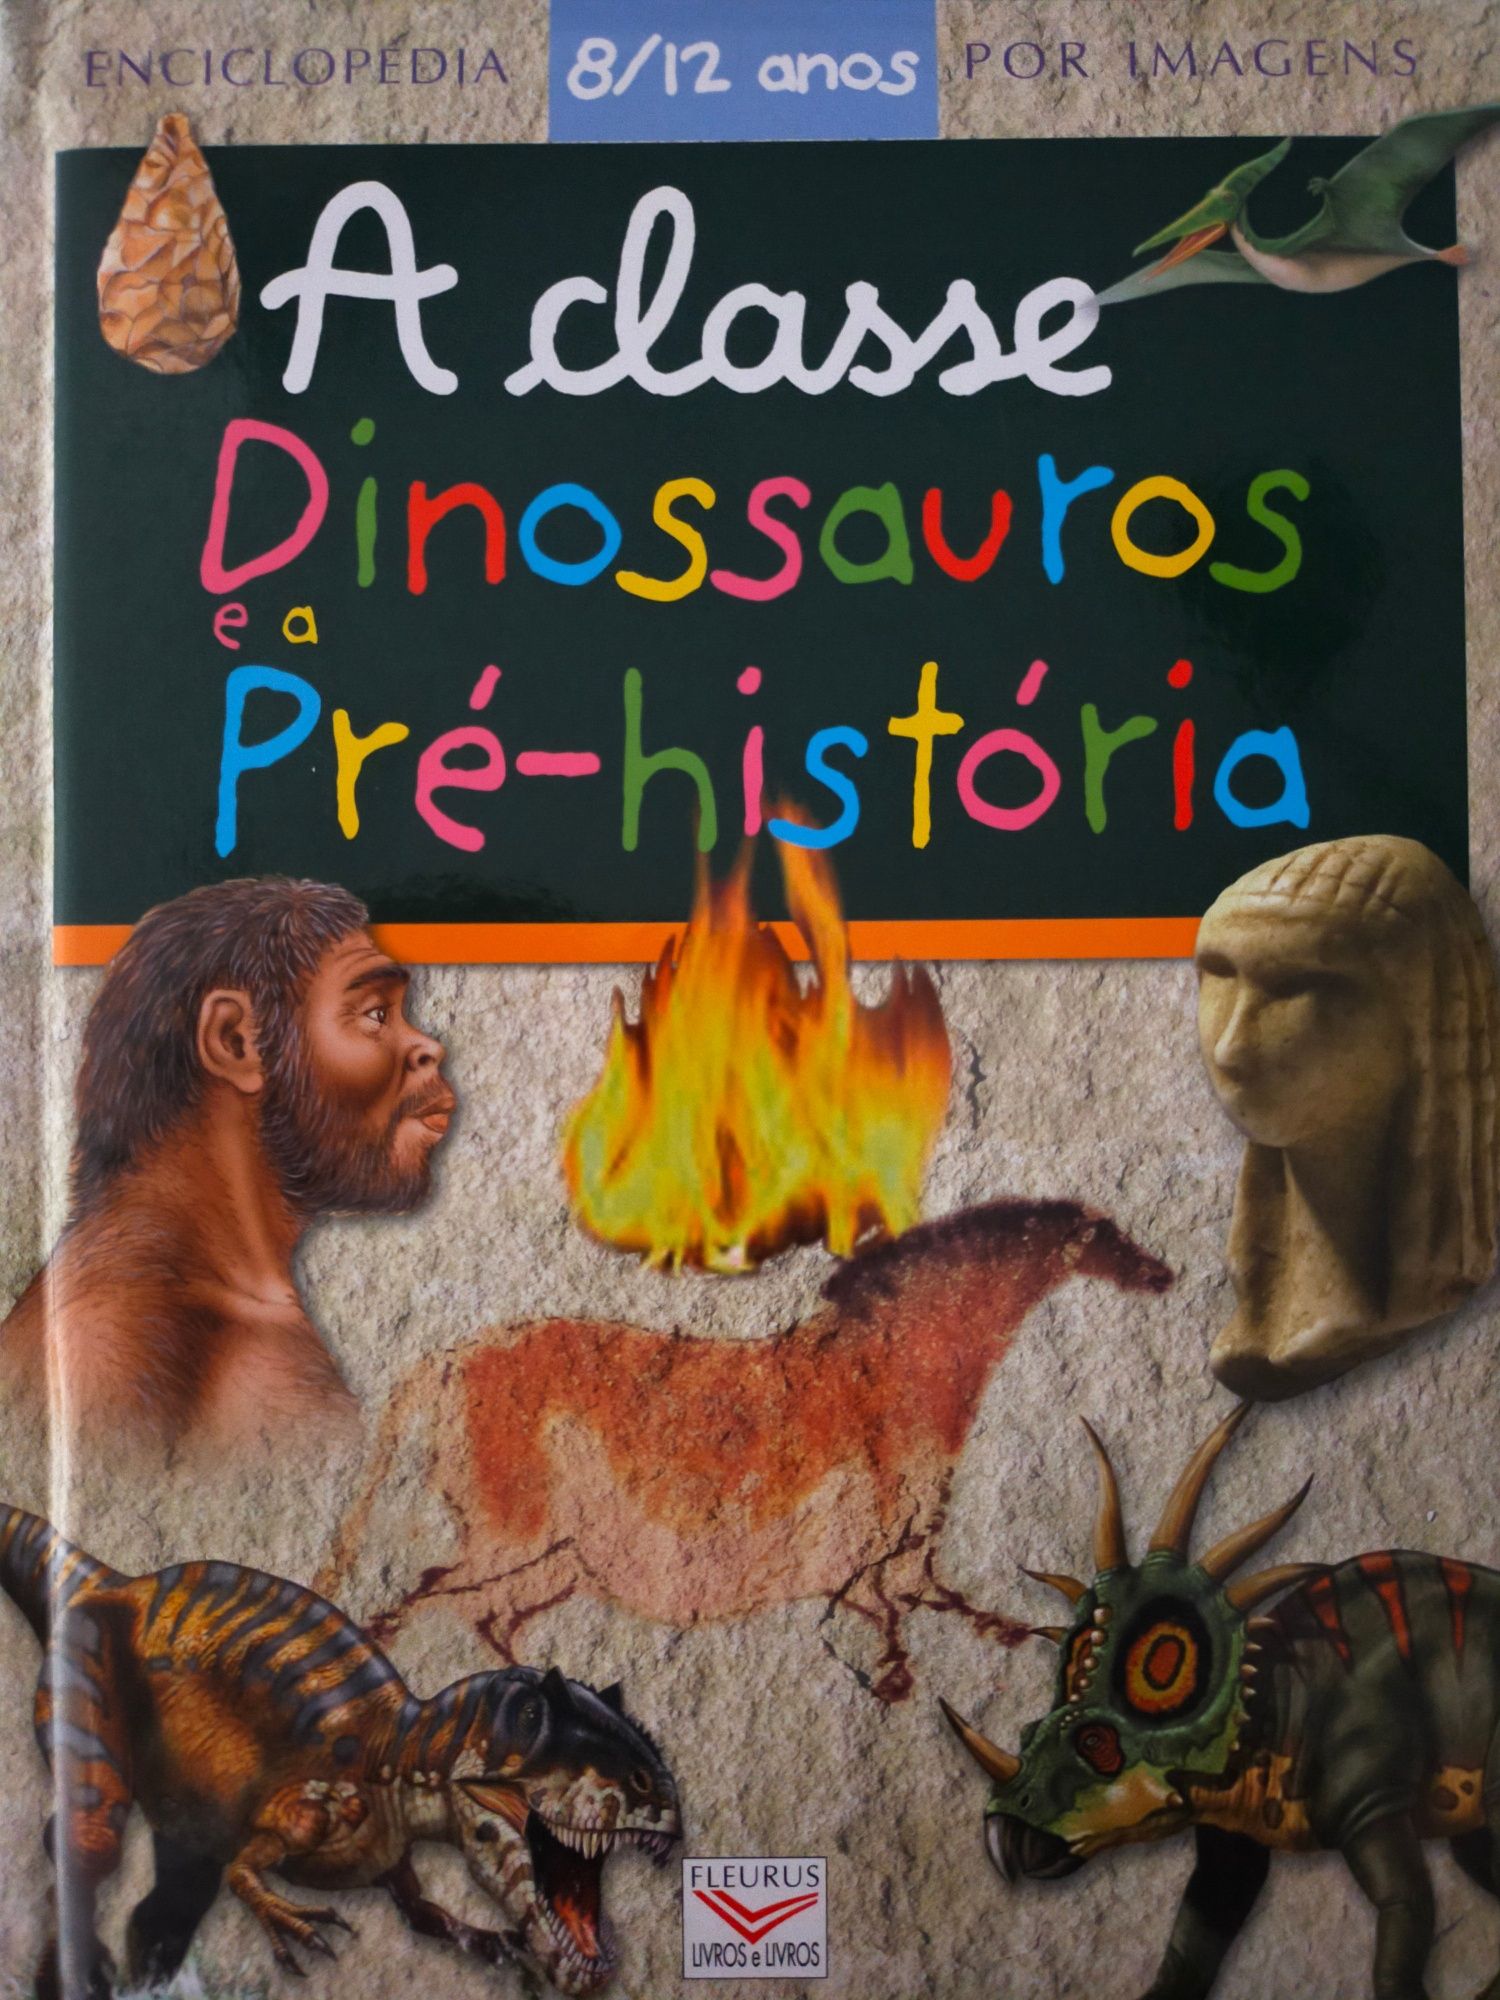 Enciclopédia por imagens 8-12 anos
Dinossauros e a Pré-história